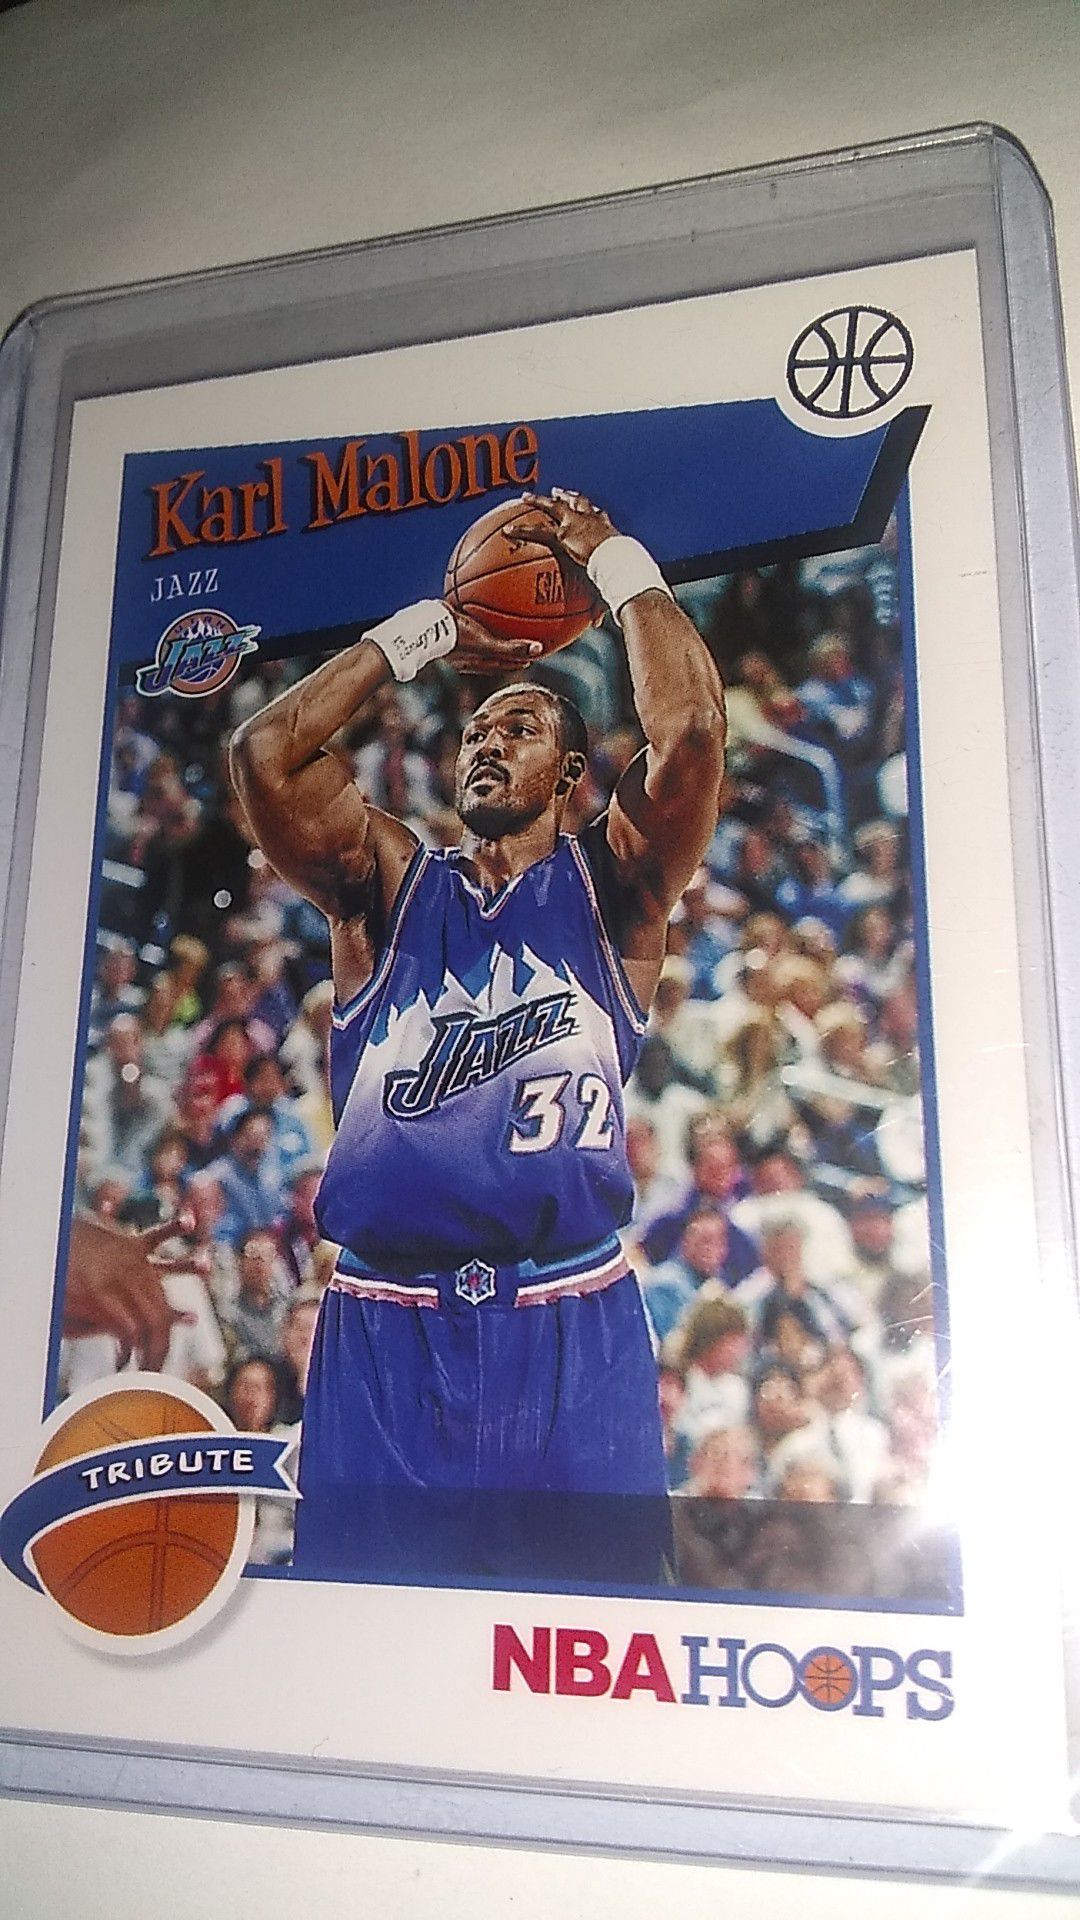 Karl Malone tribute card